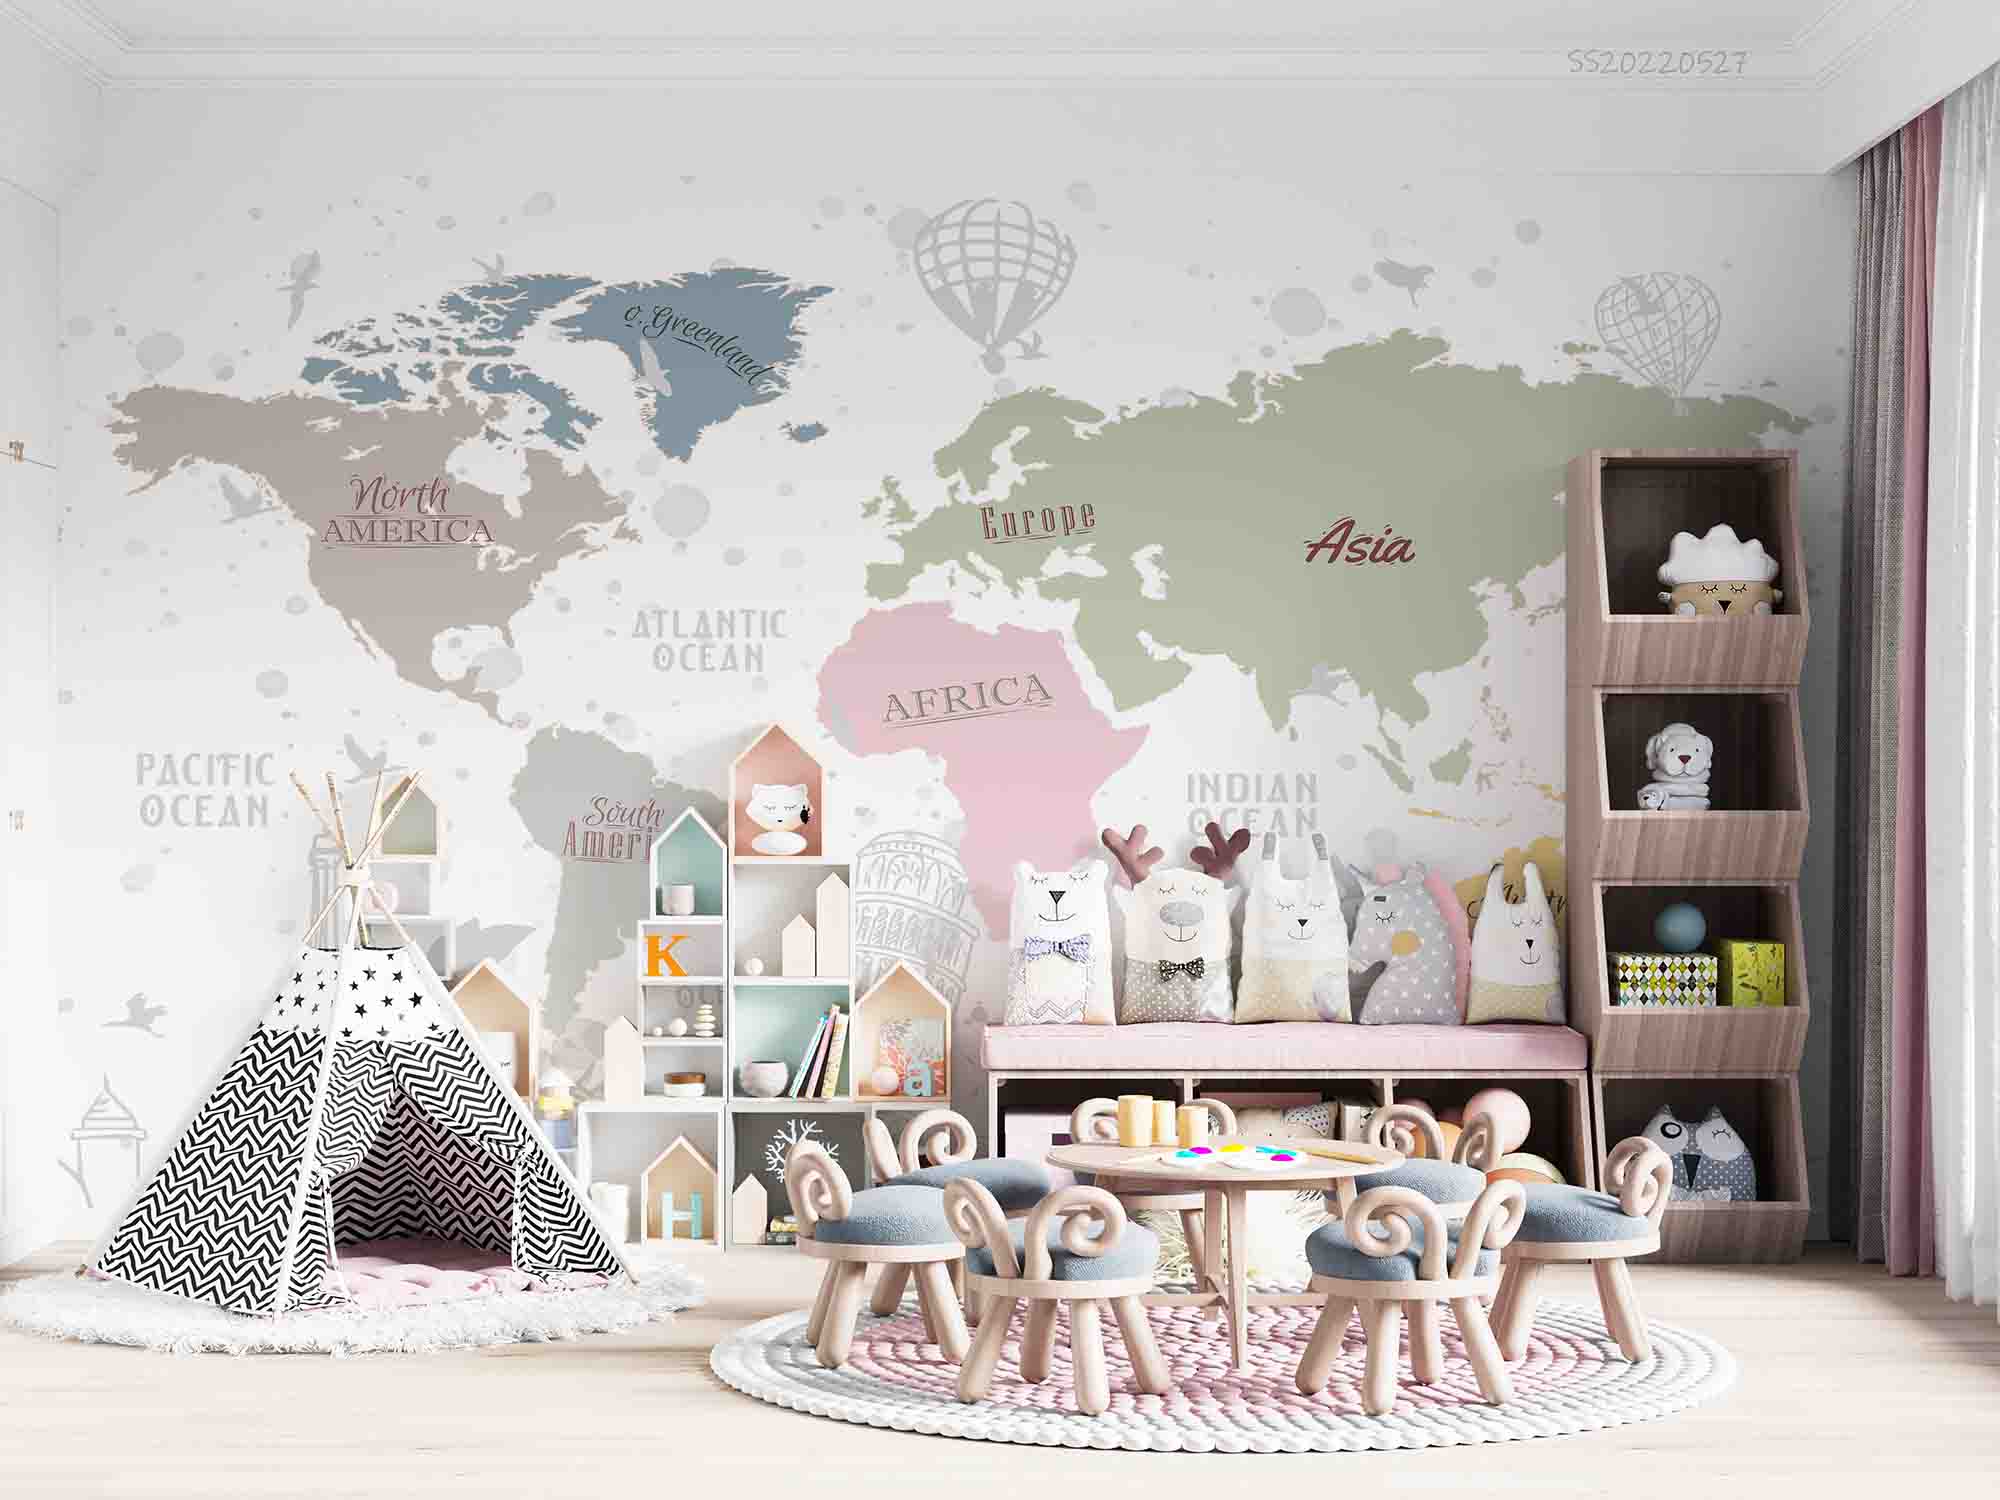 3D World Map Travel Kids Wall Mural Wallpaper GD 4158- Jess Art Decoration